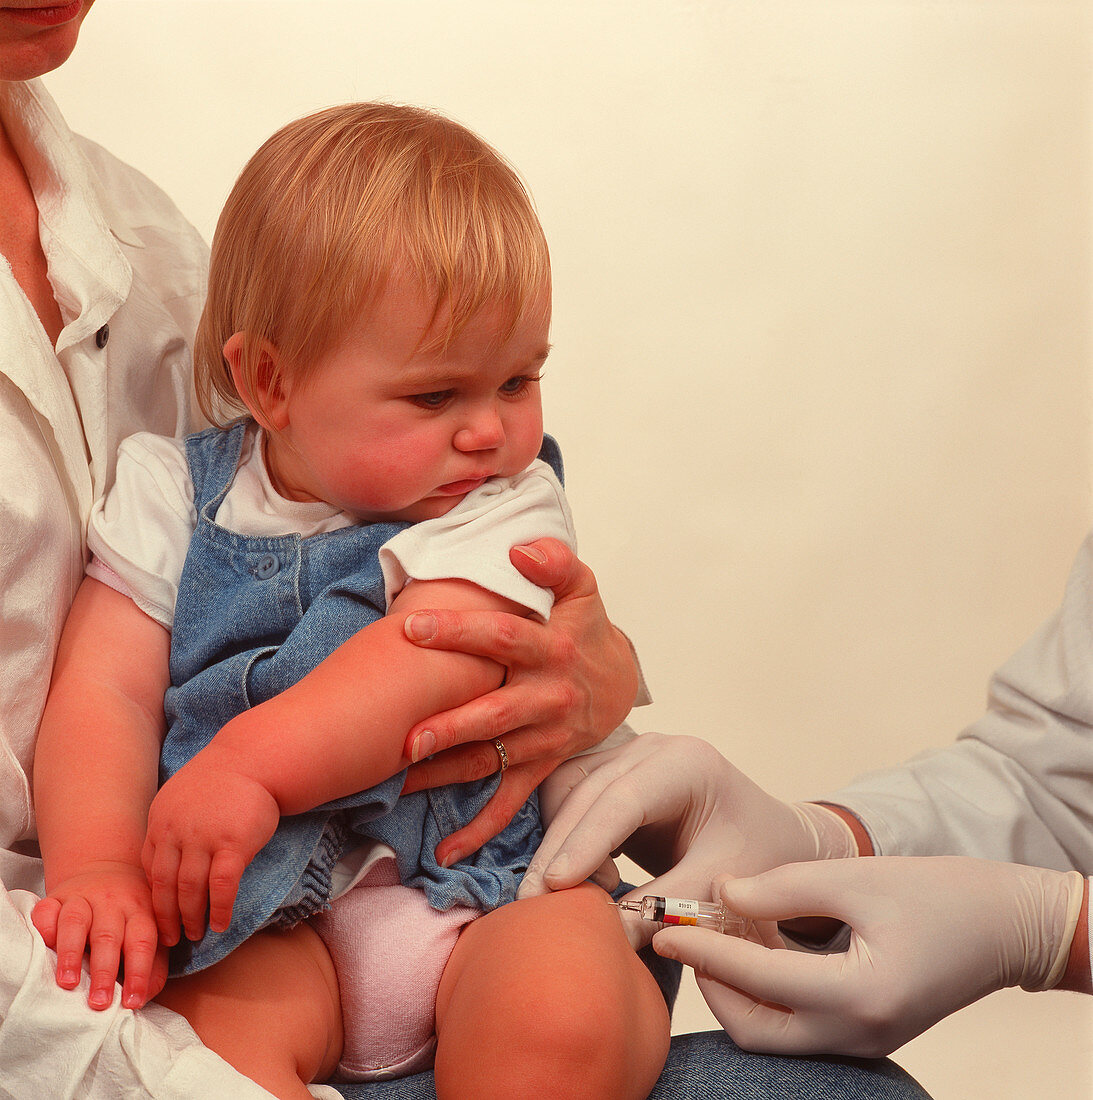 Baby receiving MMR vaccine